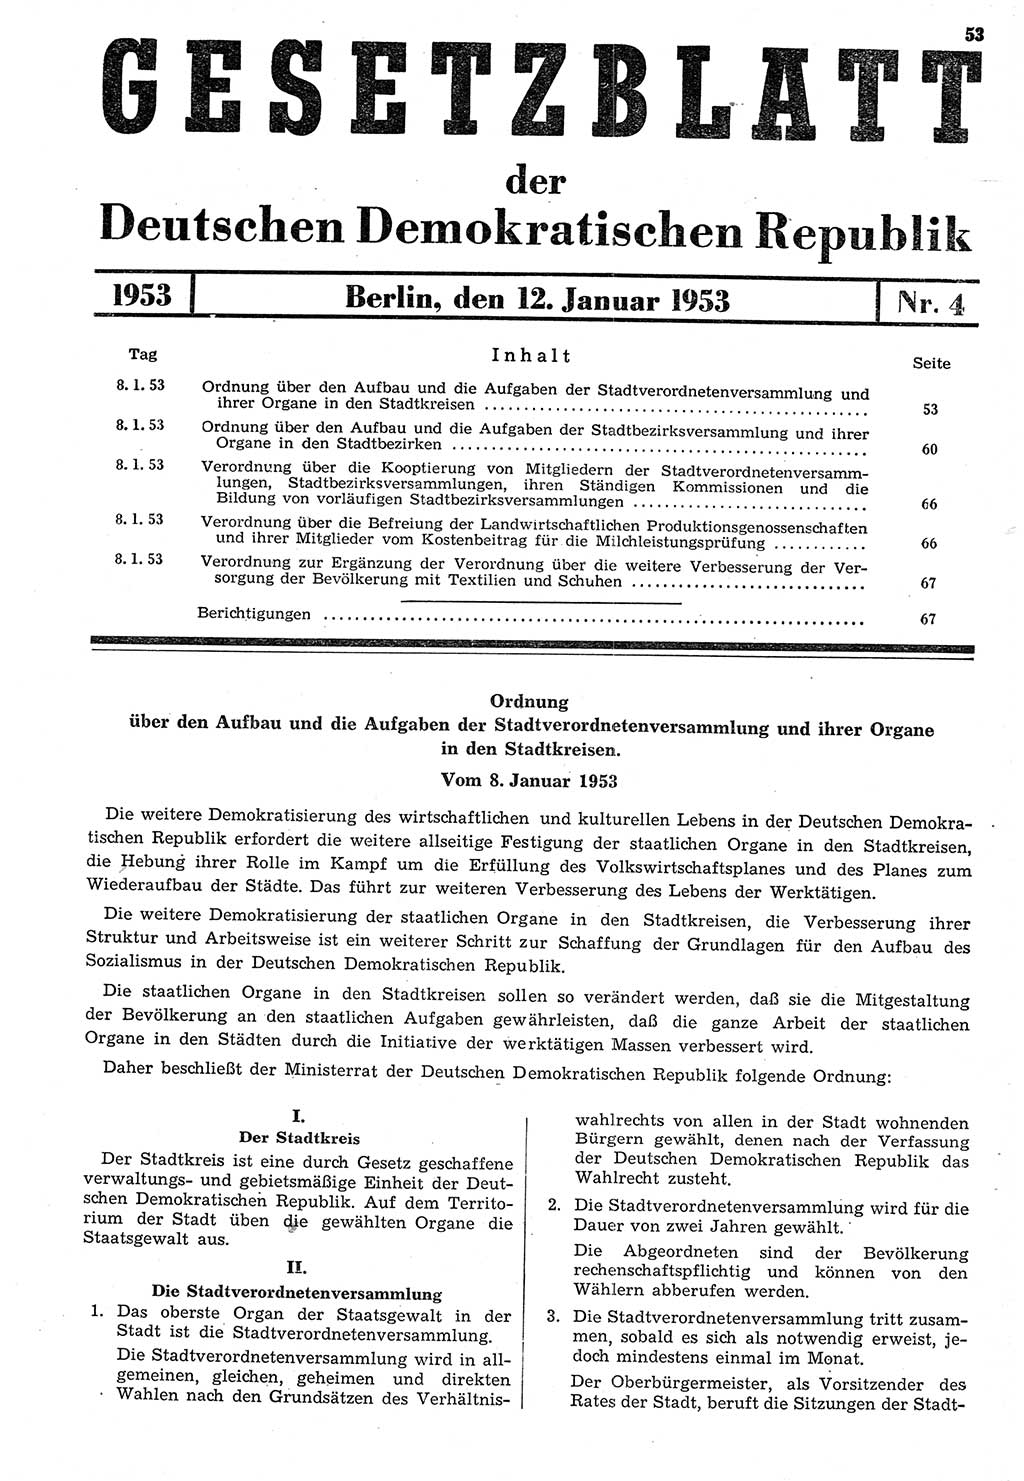 Gesetzblatt (GBl.) der Deutschen Demokratischen Republik (DDR) 1953, Seite 53 (GBl. DDR 1953, S. 53)